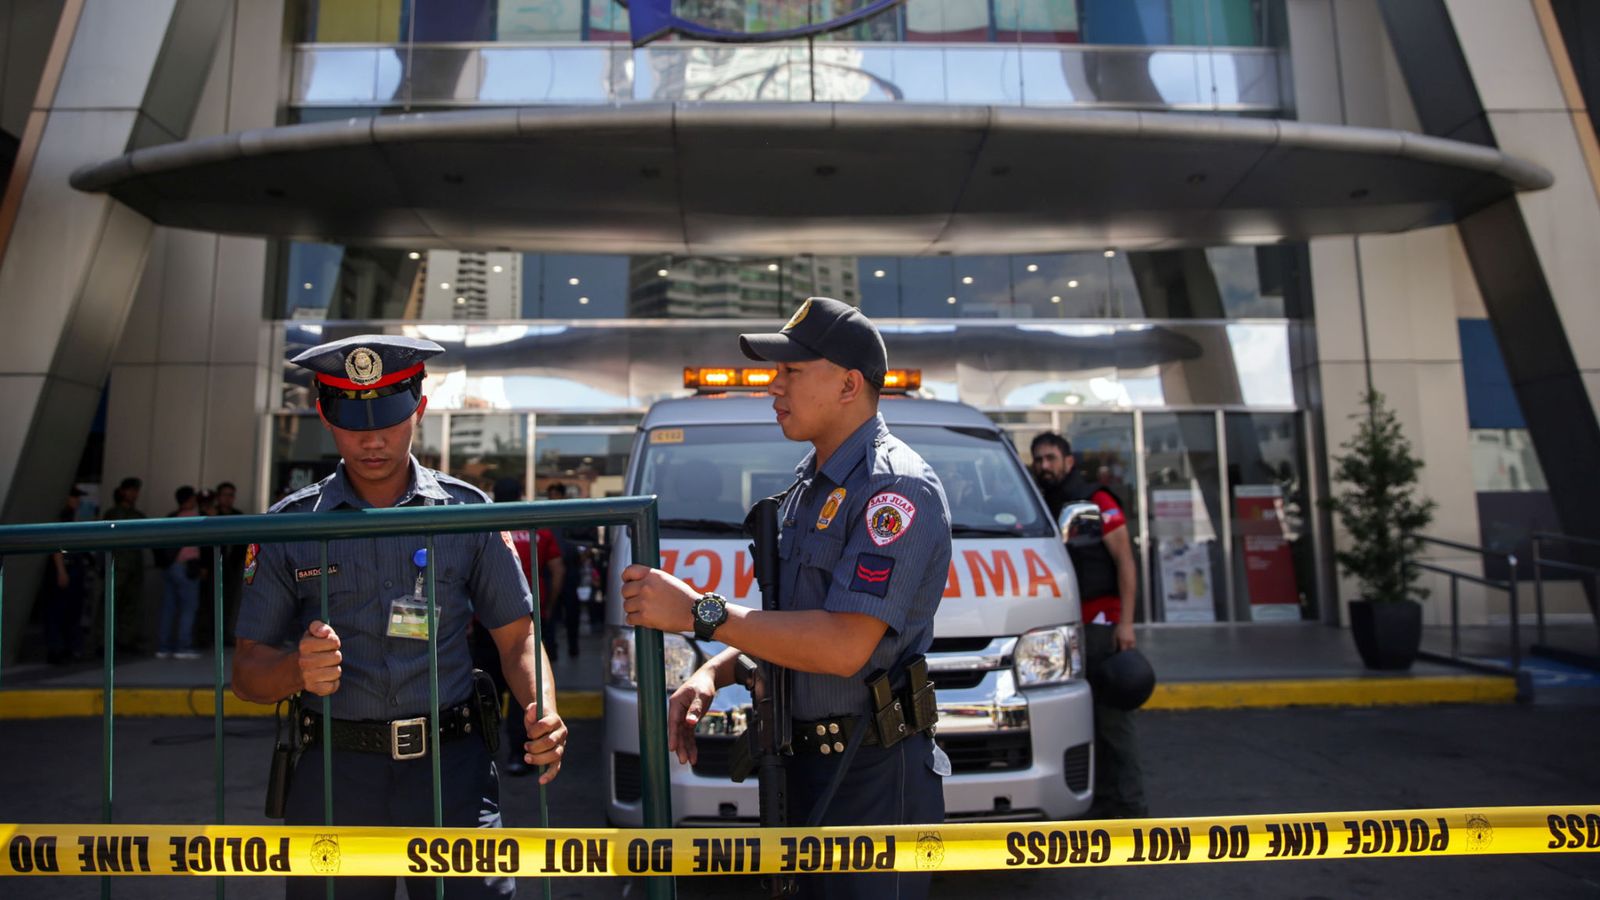 菲律宾一商场发生劫持事件:嫌犯因被解雇心情糟糕